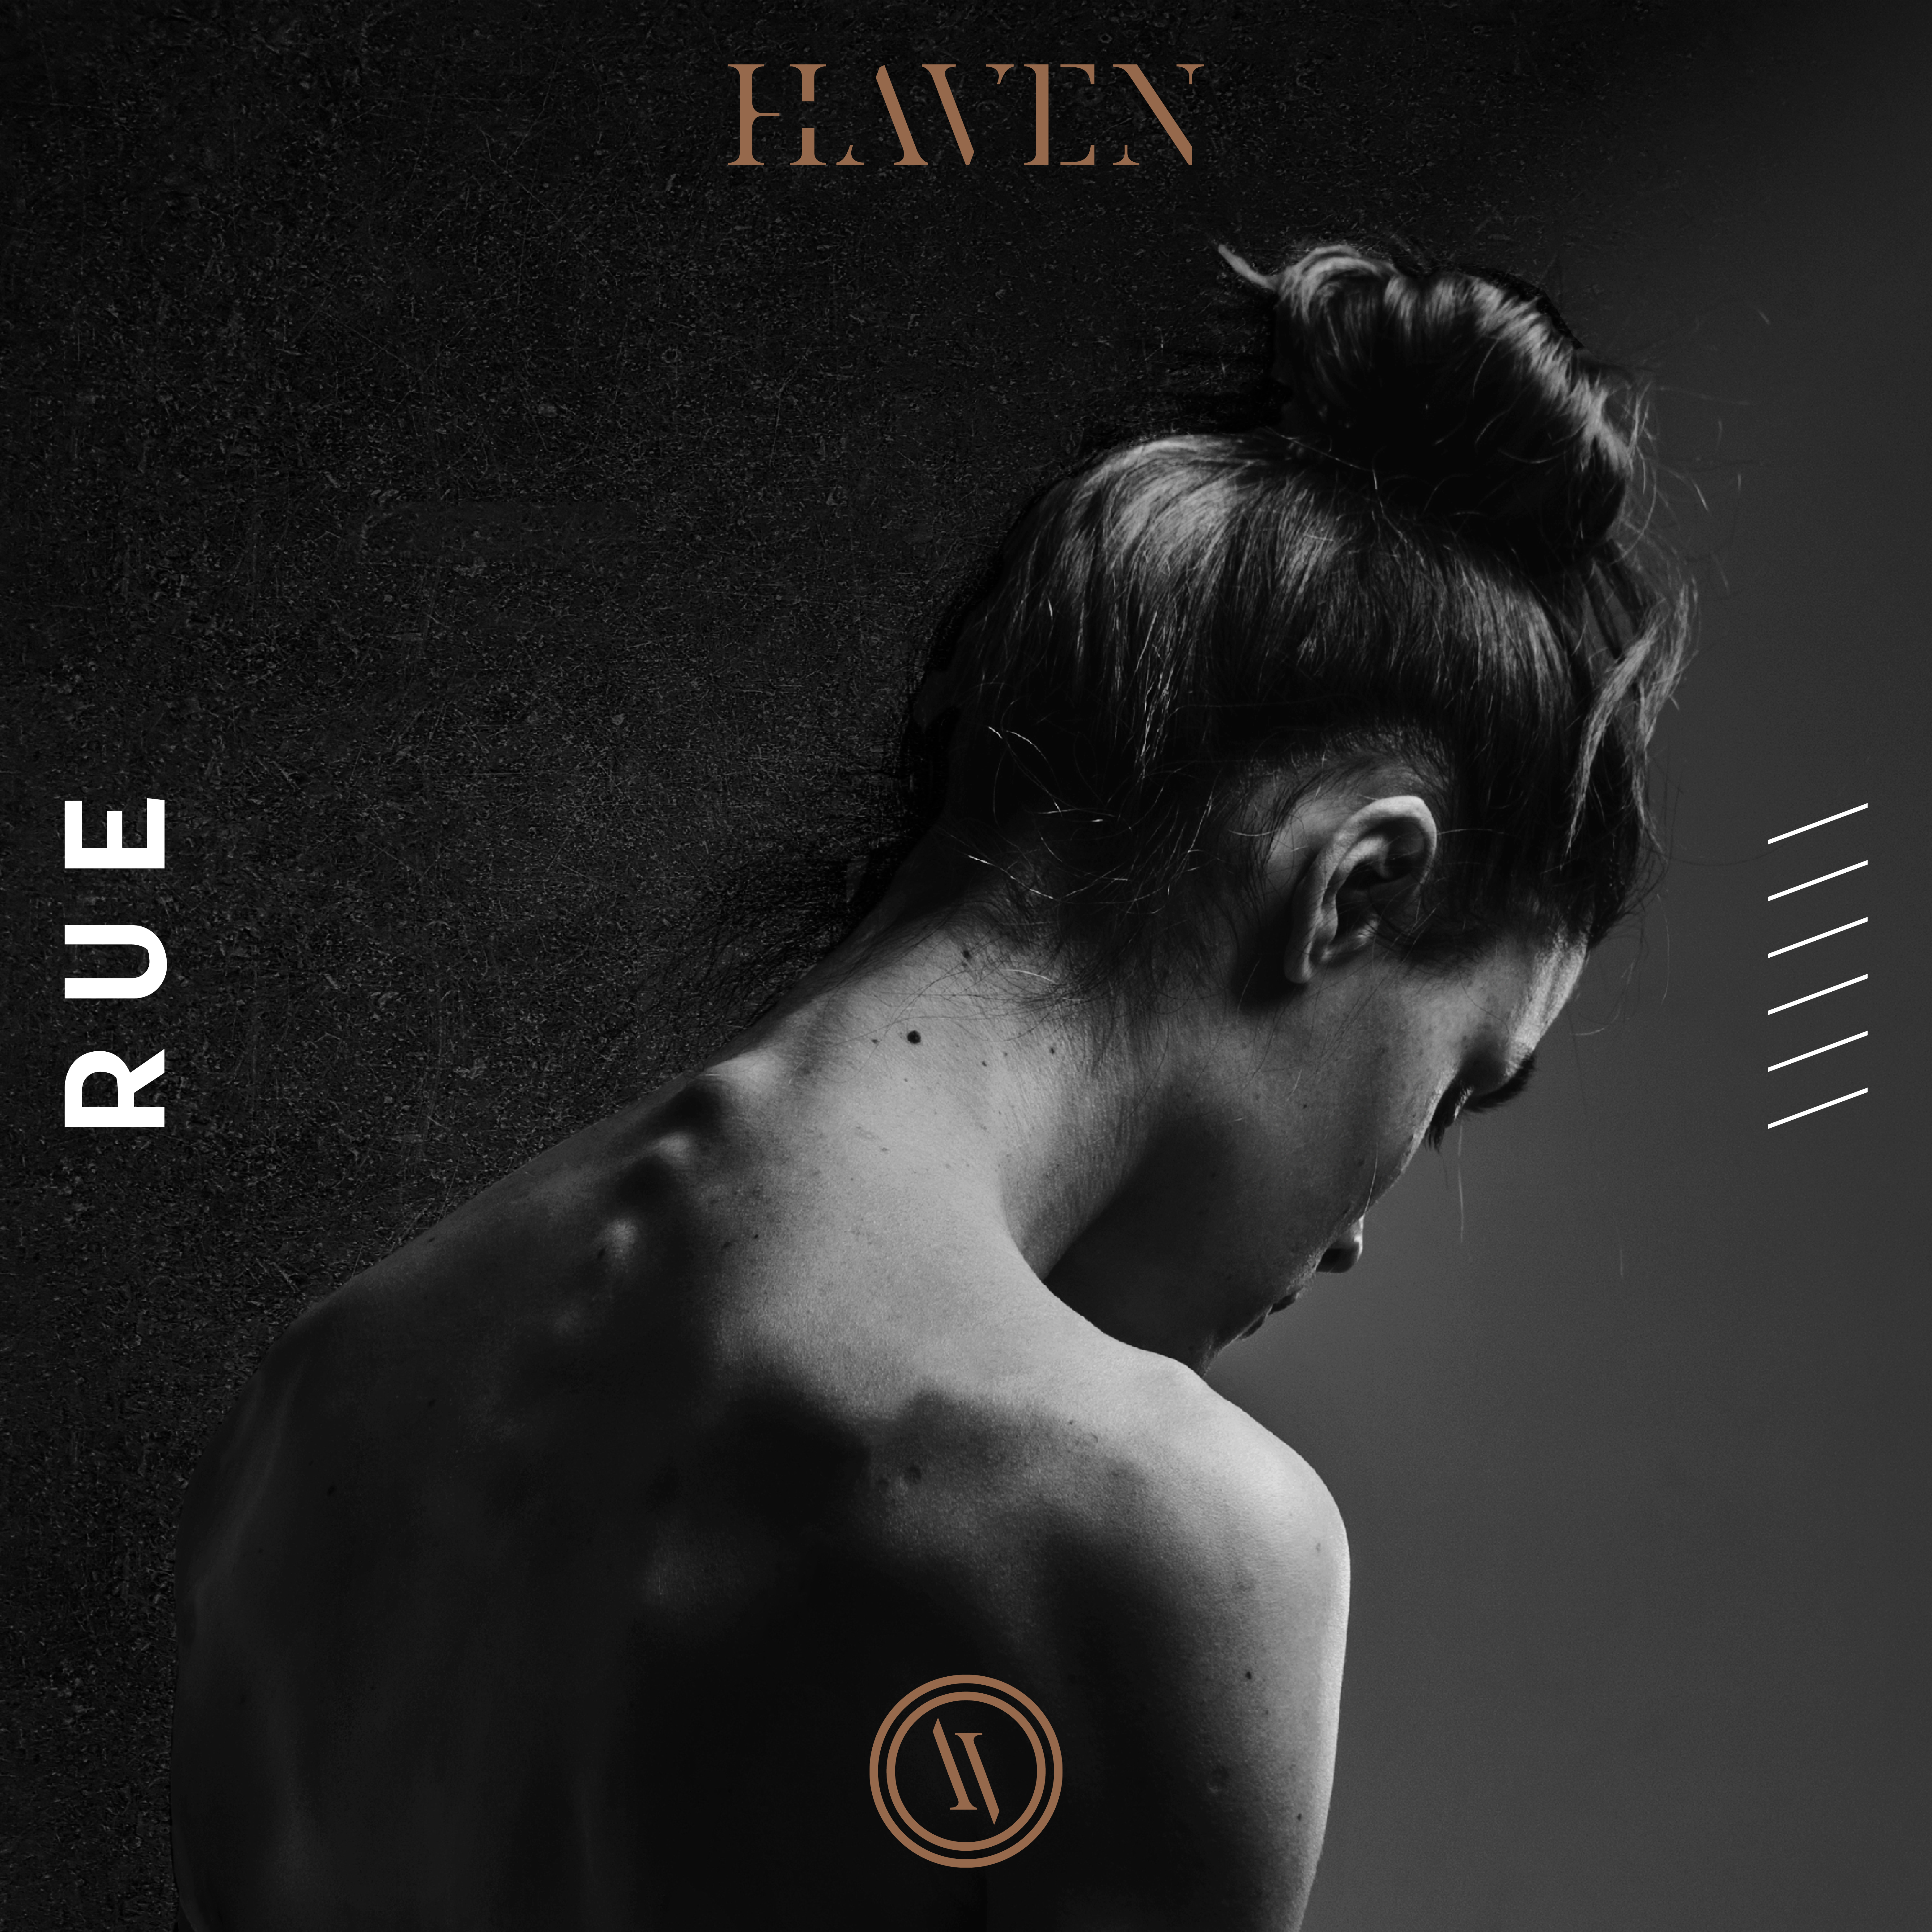 Neues Kunstwerk aus dem Hause HAVEN – Video zur neuen Single “Rue” veröffentlicht